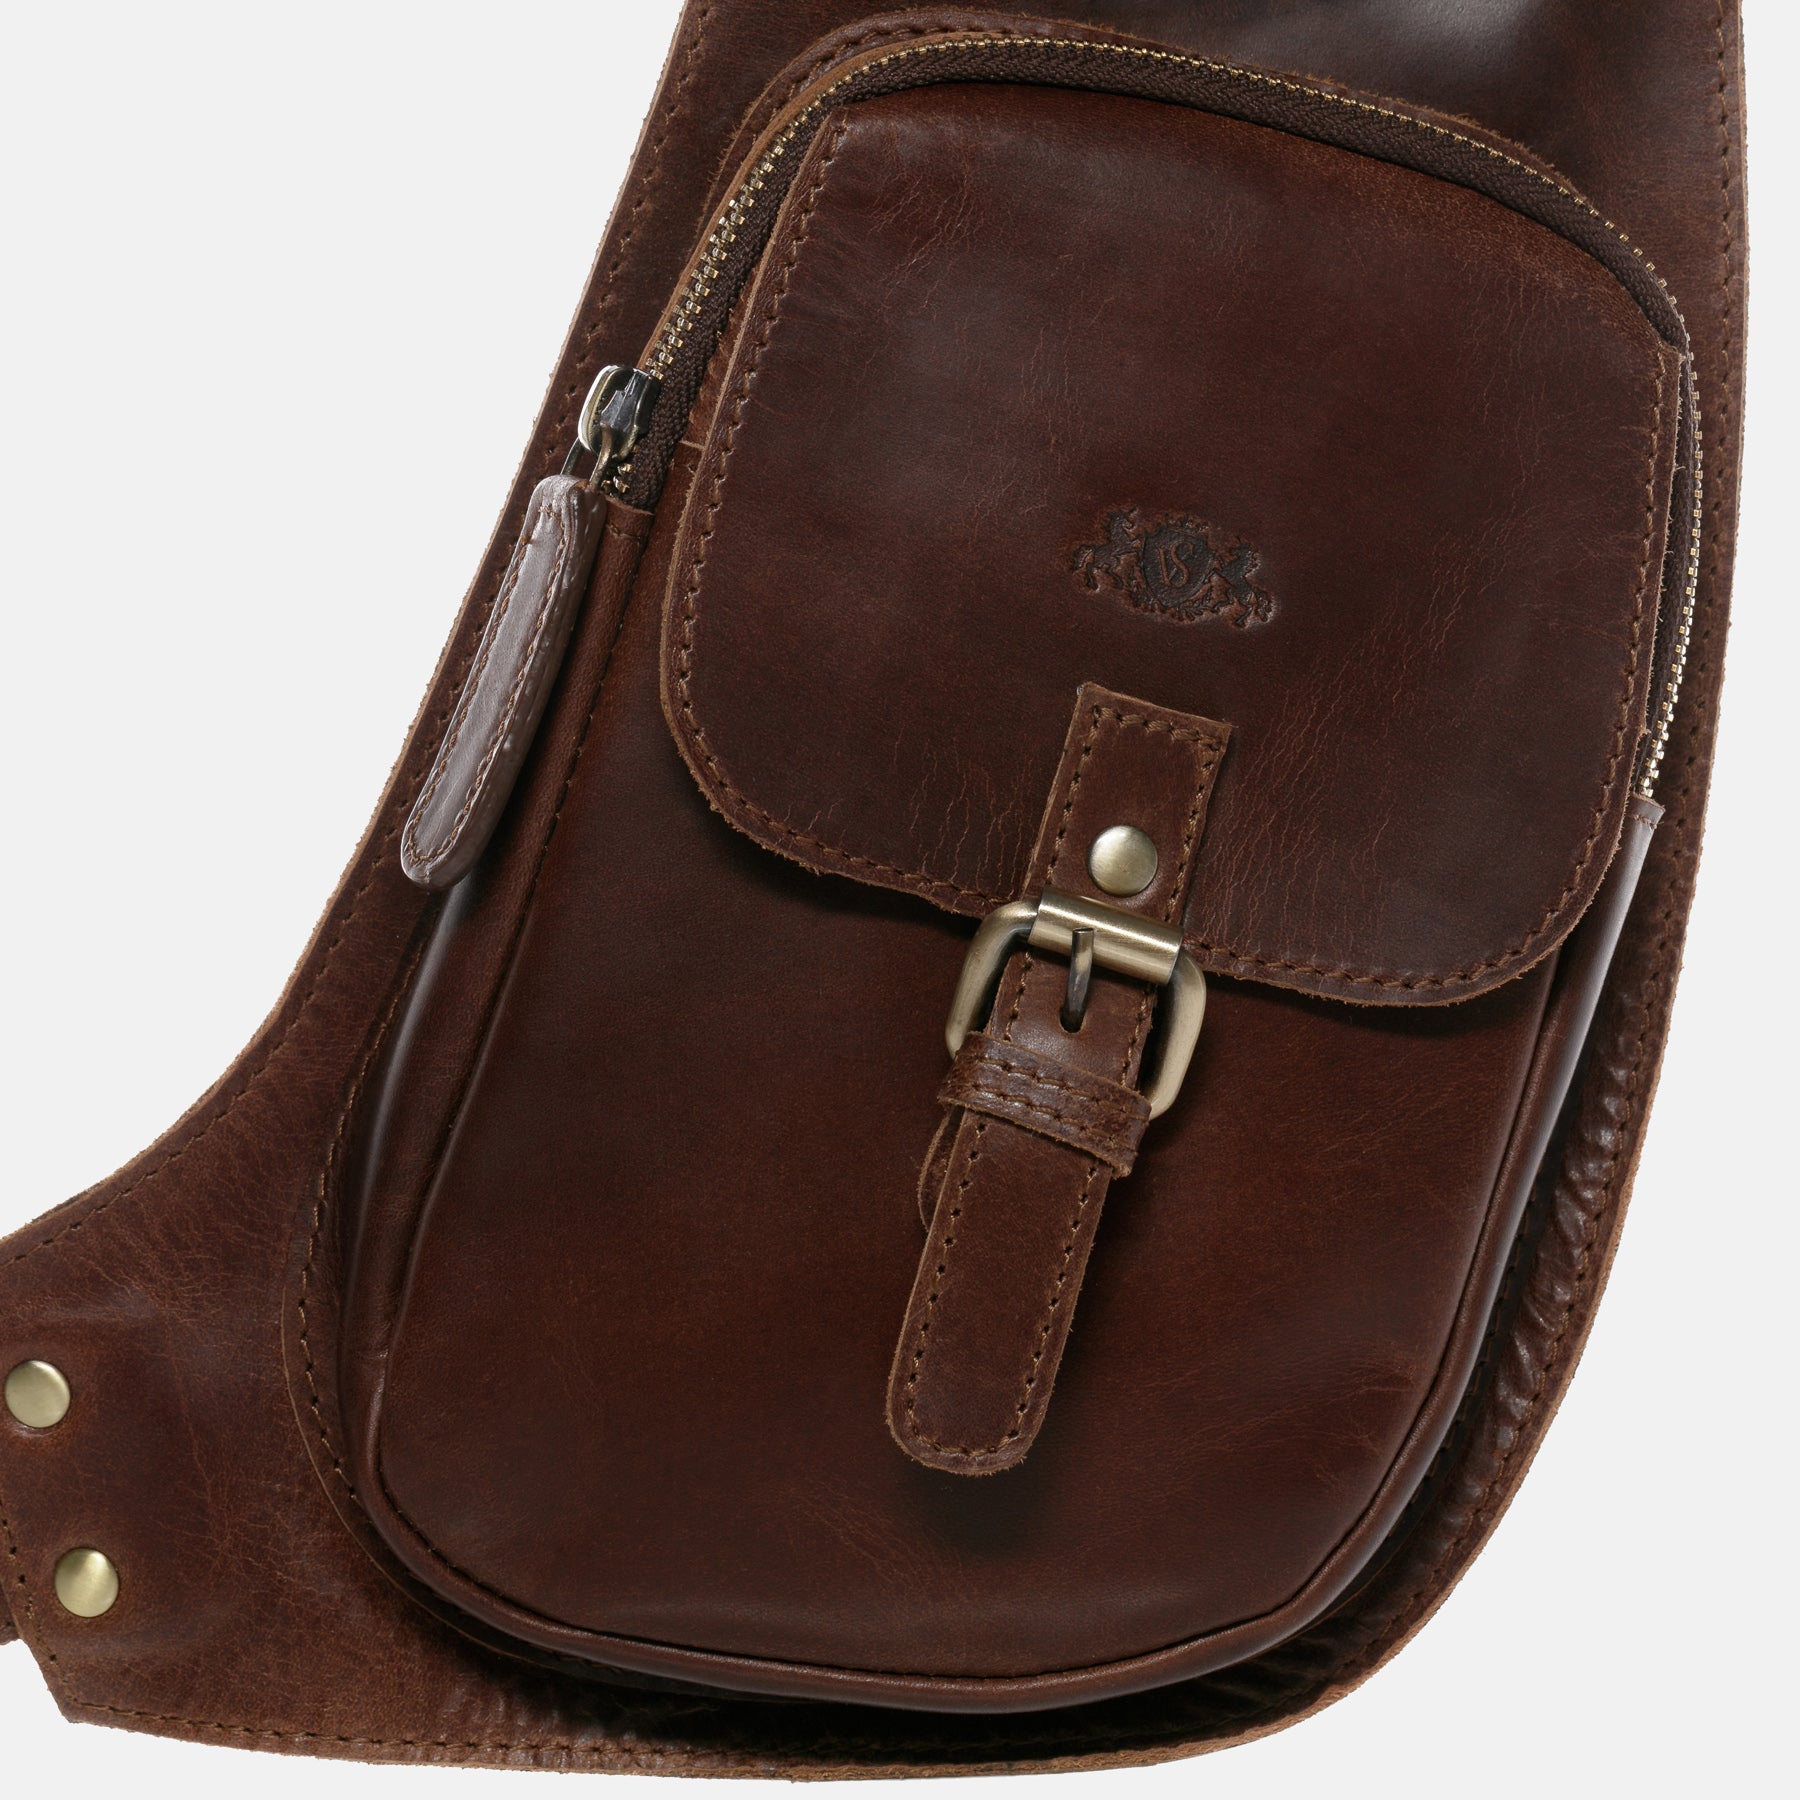 Shoulder bag DUDLEY natural leather brown-cognac